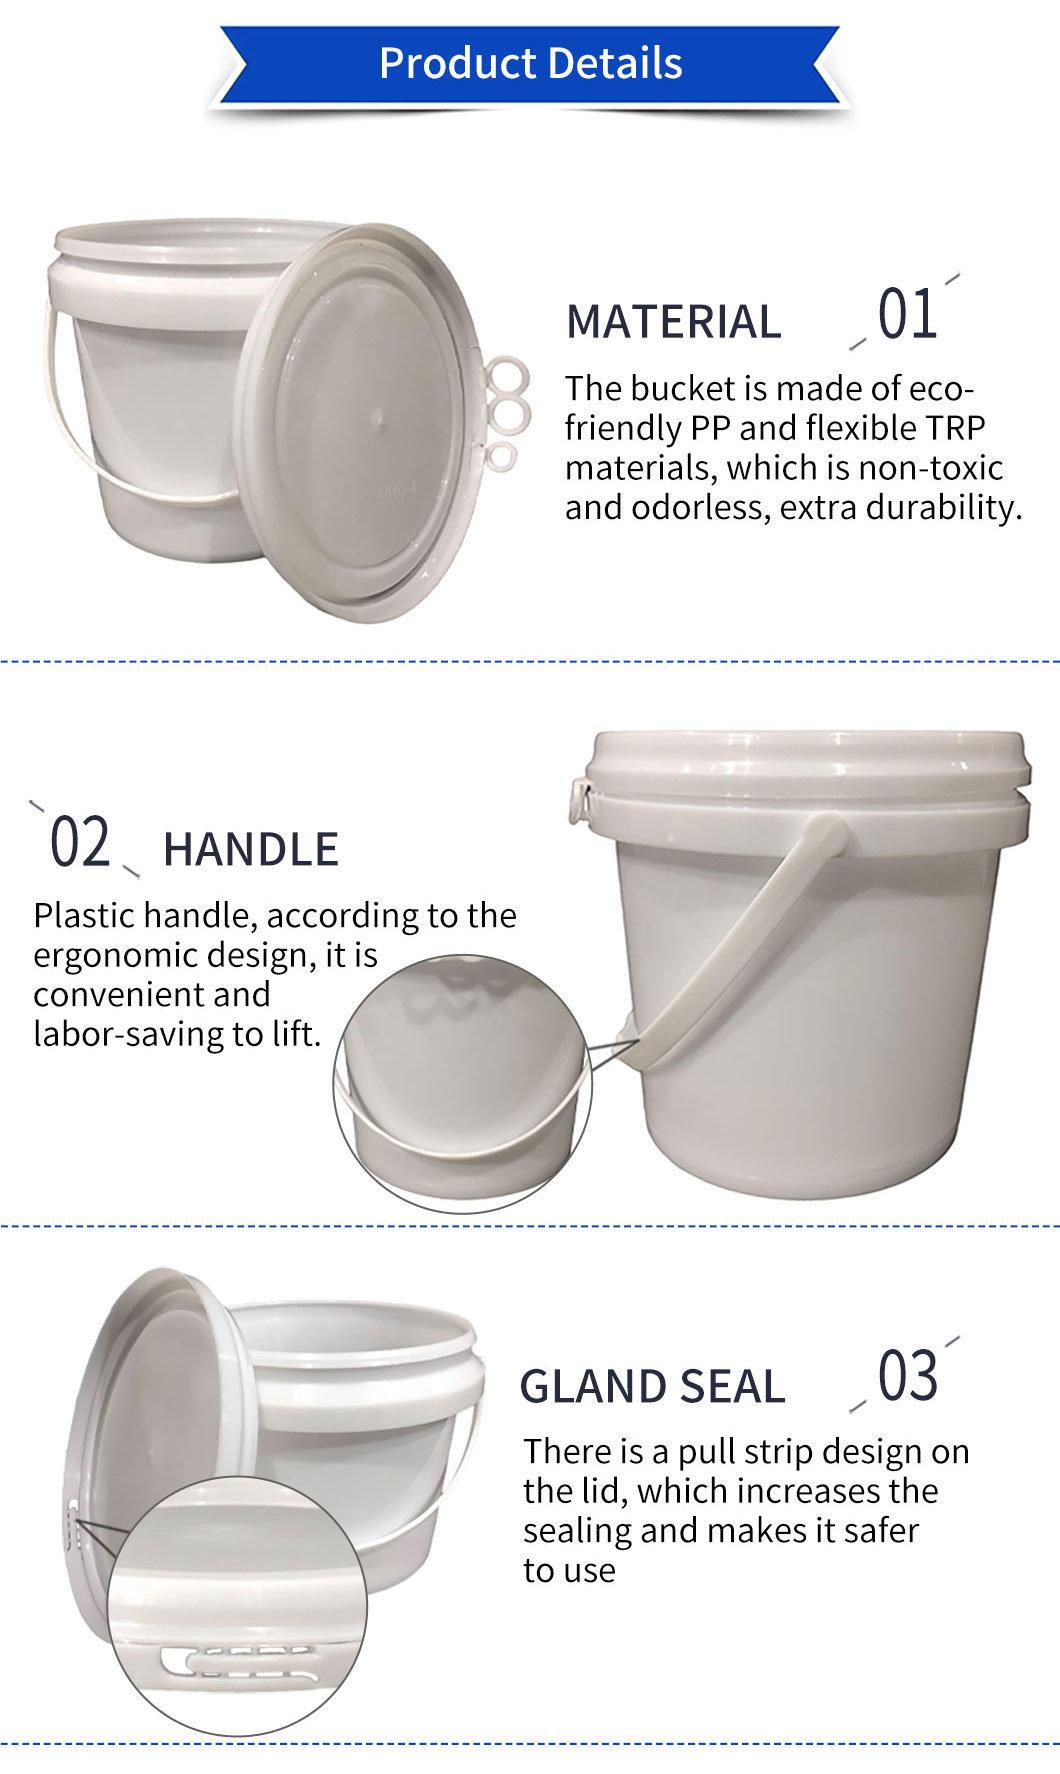 Transparent 1 L 2L 10L 15L 16L 20L 18L 40L Round Plastic Bucket Paint Bucket with Plastic Lid